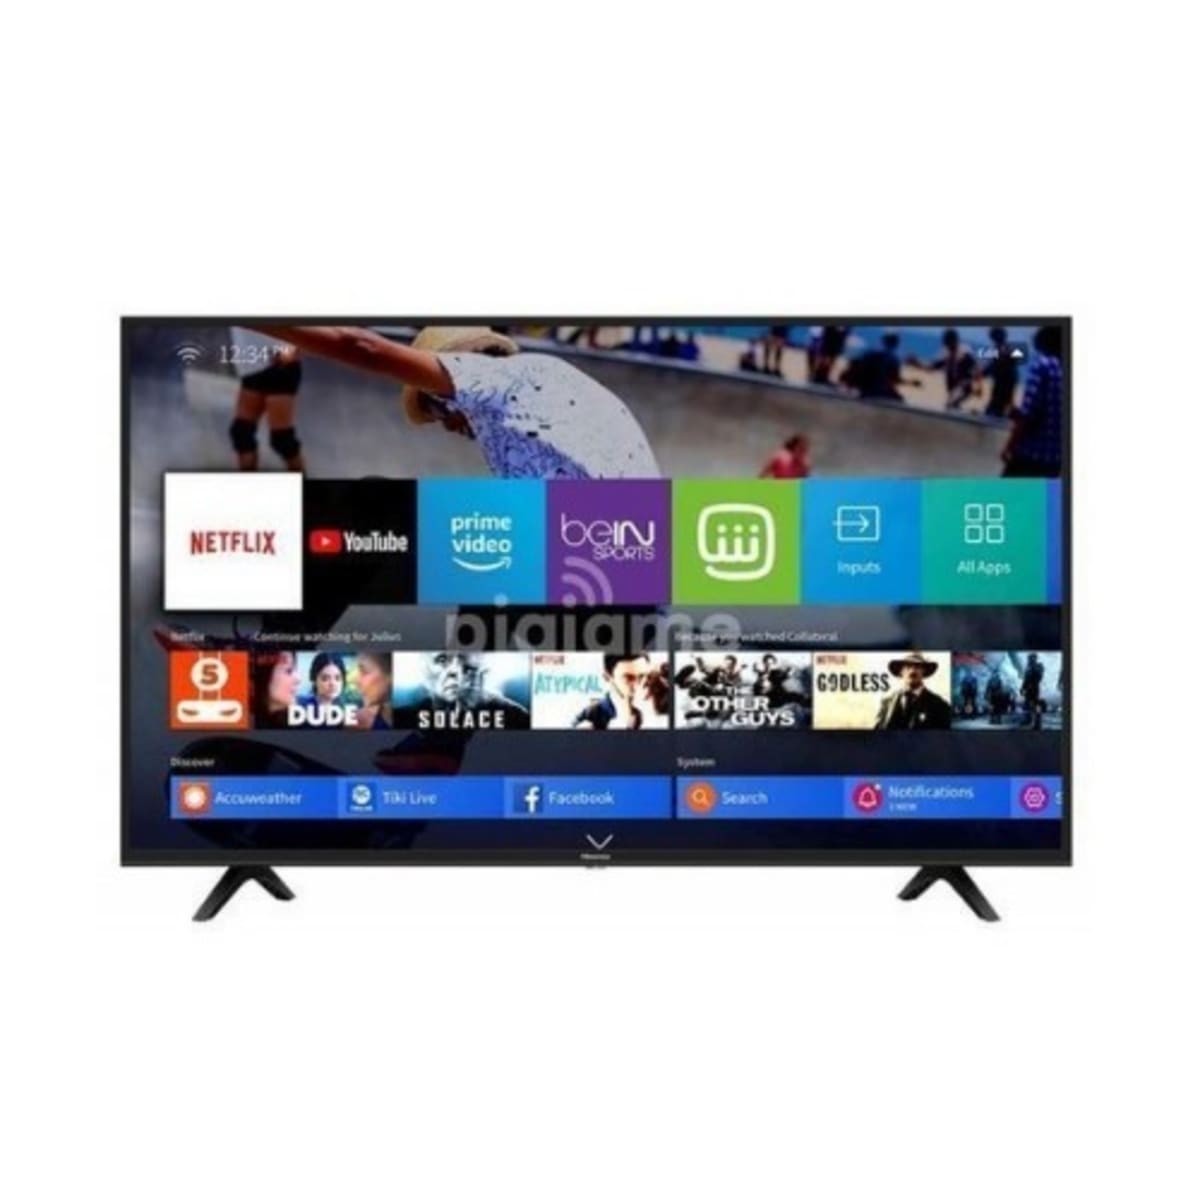 Smart TV HD 32A4H – Hisense